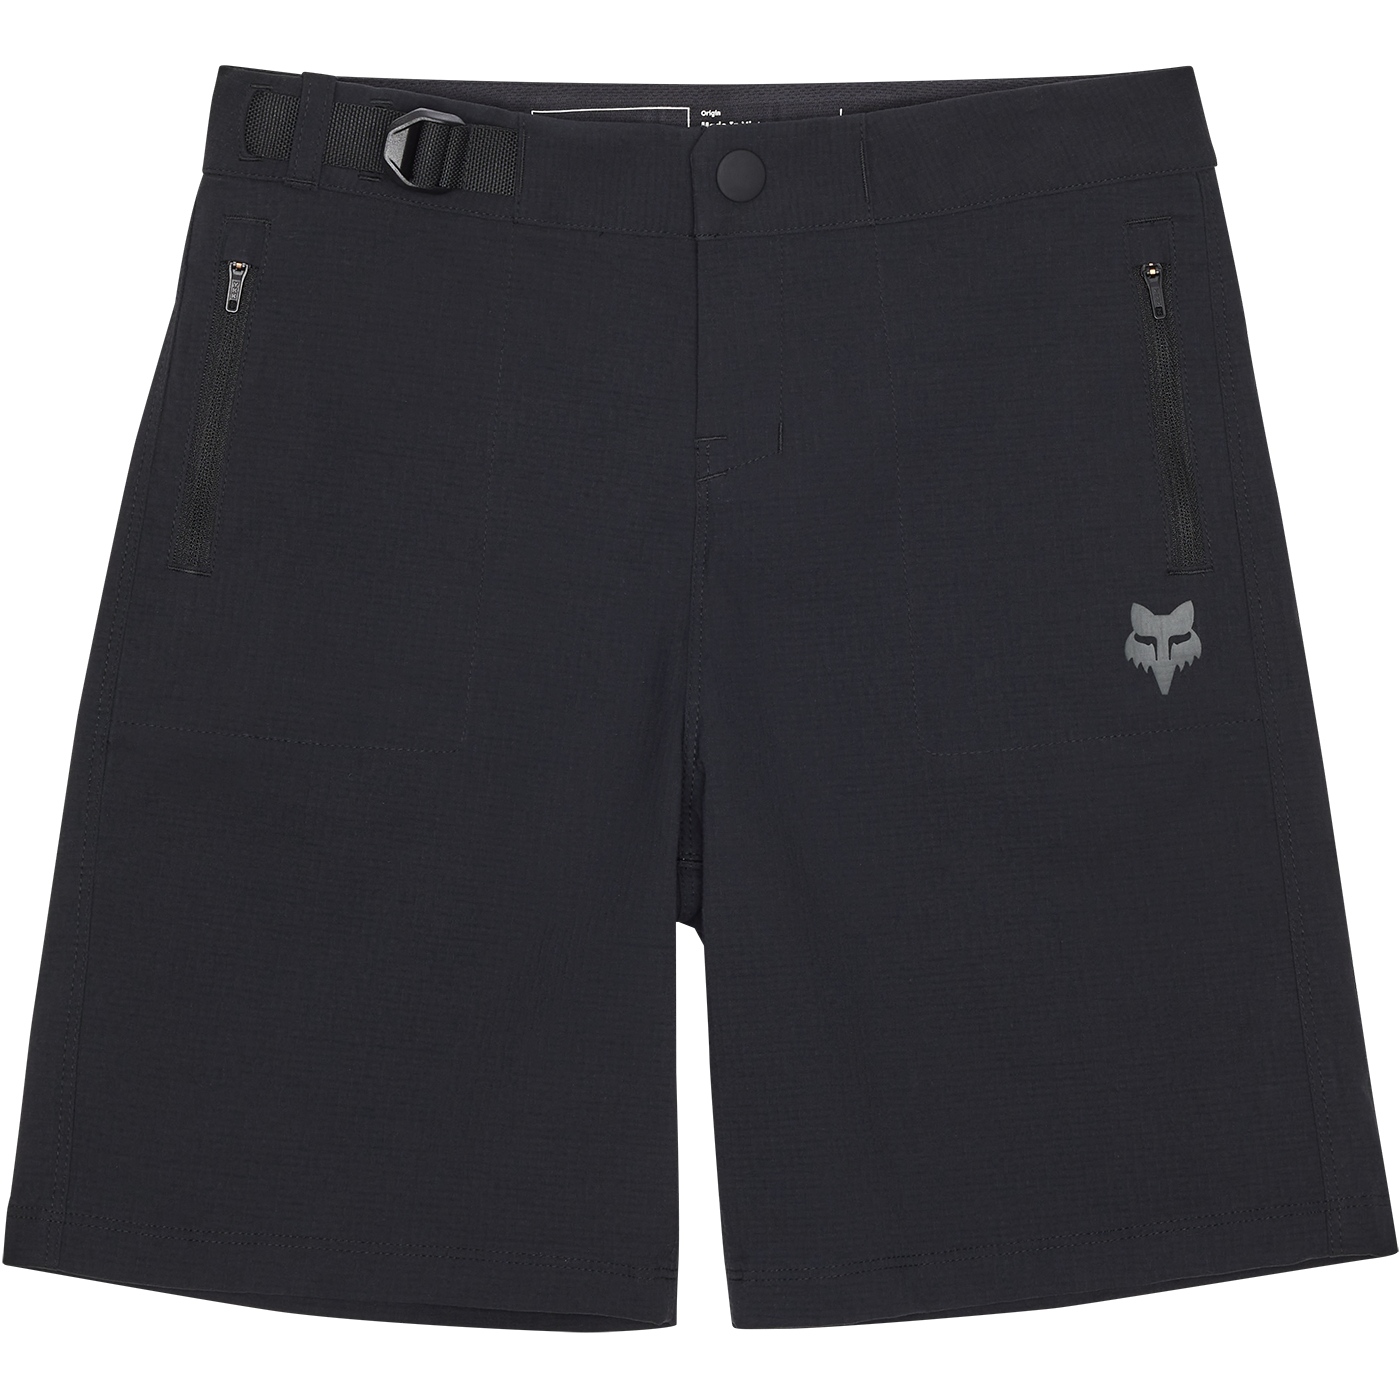 Produktbild von FOX Ranger MTB Shorts mit Innenhose Kinder - schwarz